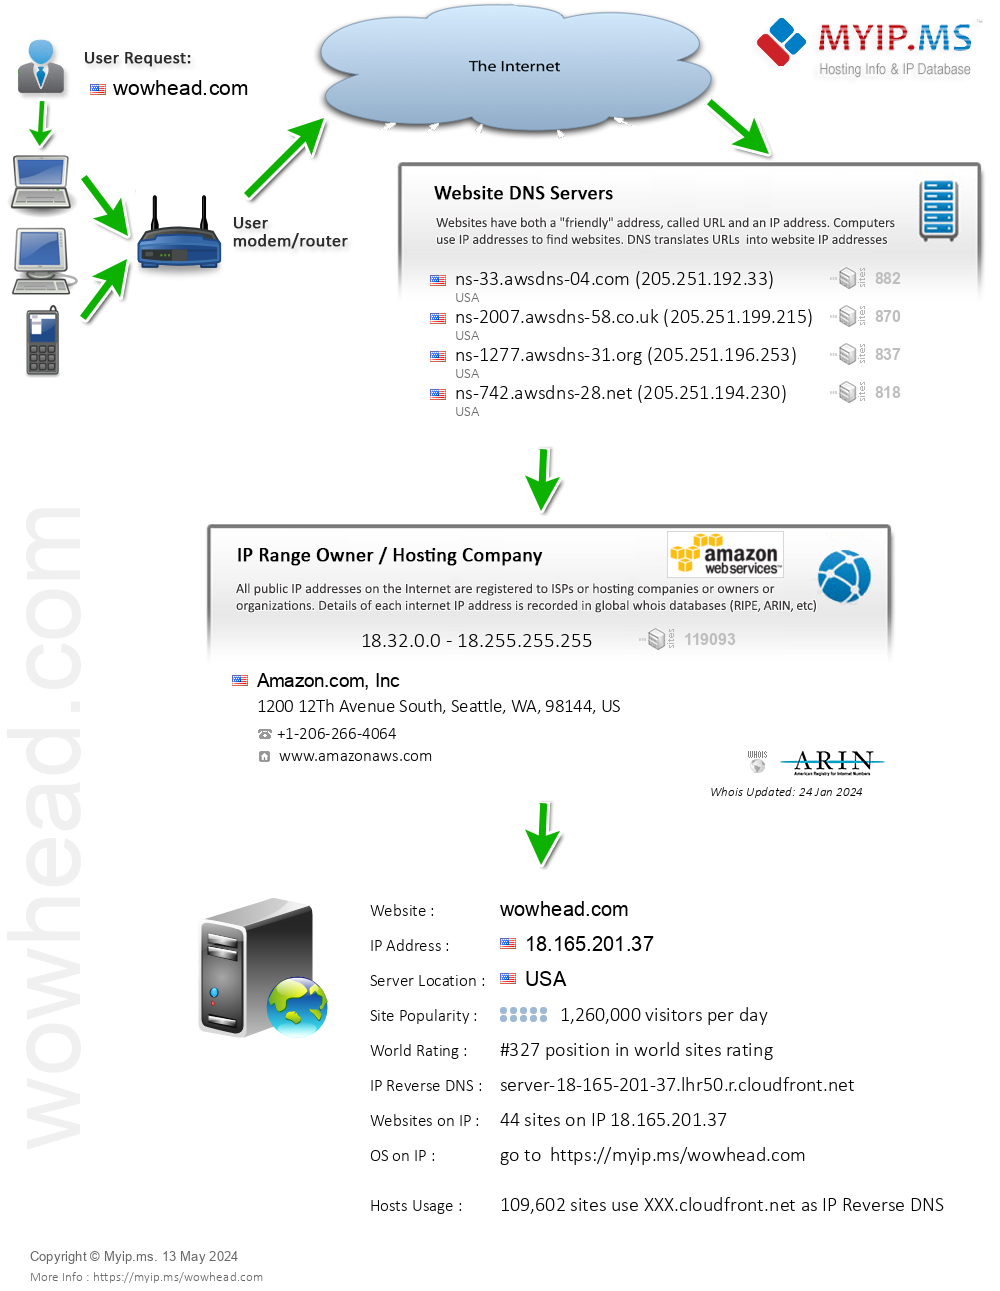 Wowhead.com - Website Hosting Visual IP Diagram